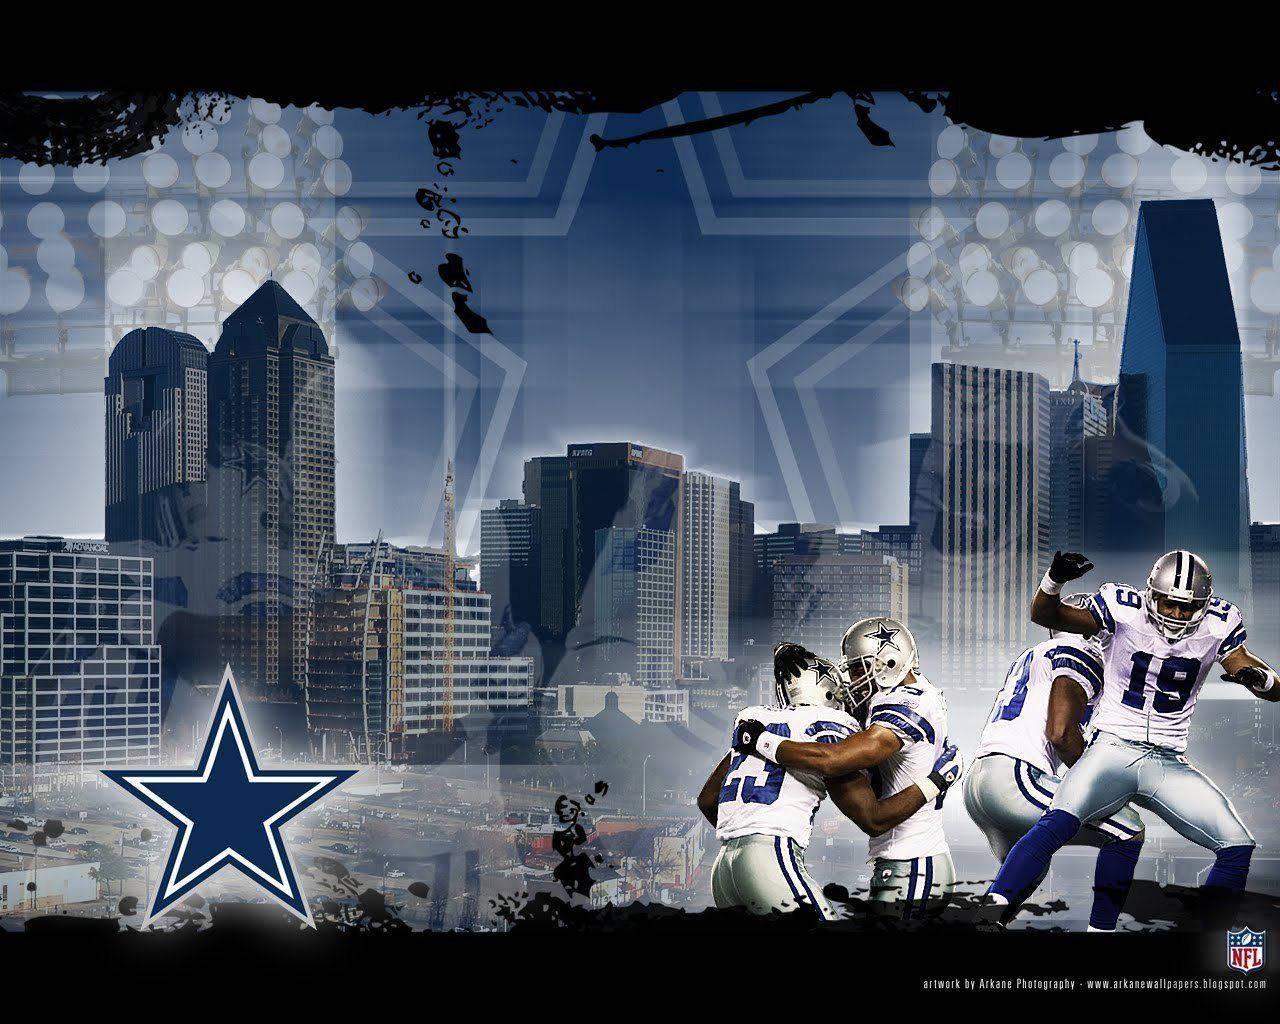 Dallas Cowboys Football Players Wallpaper